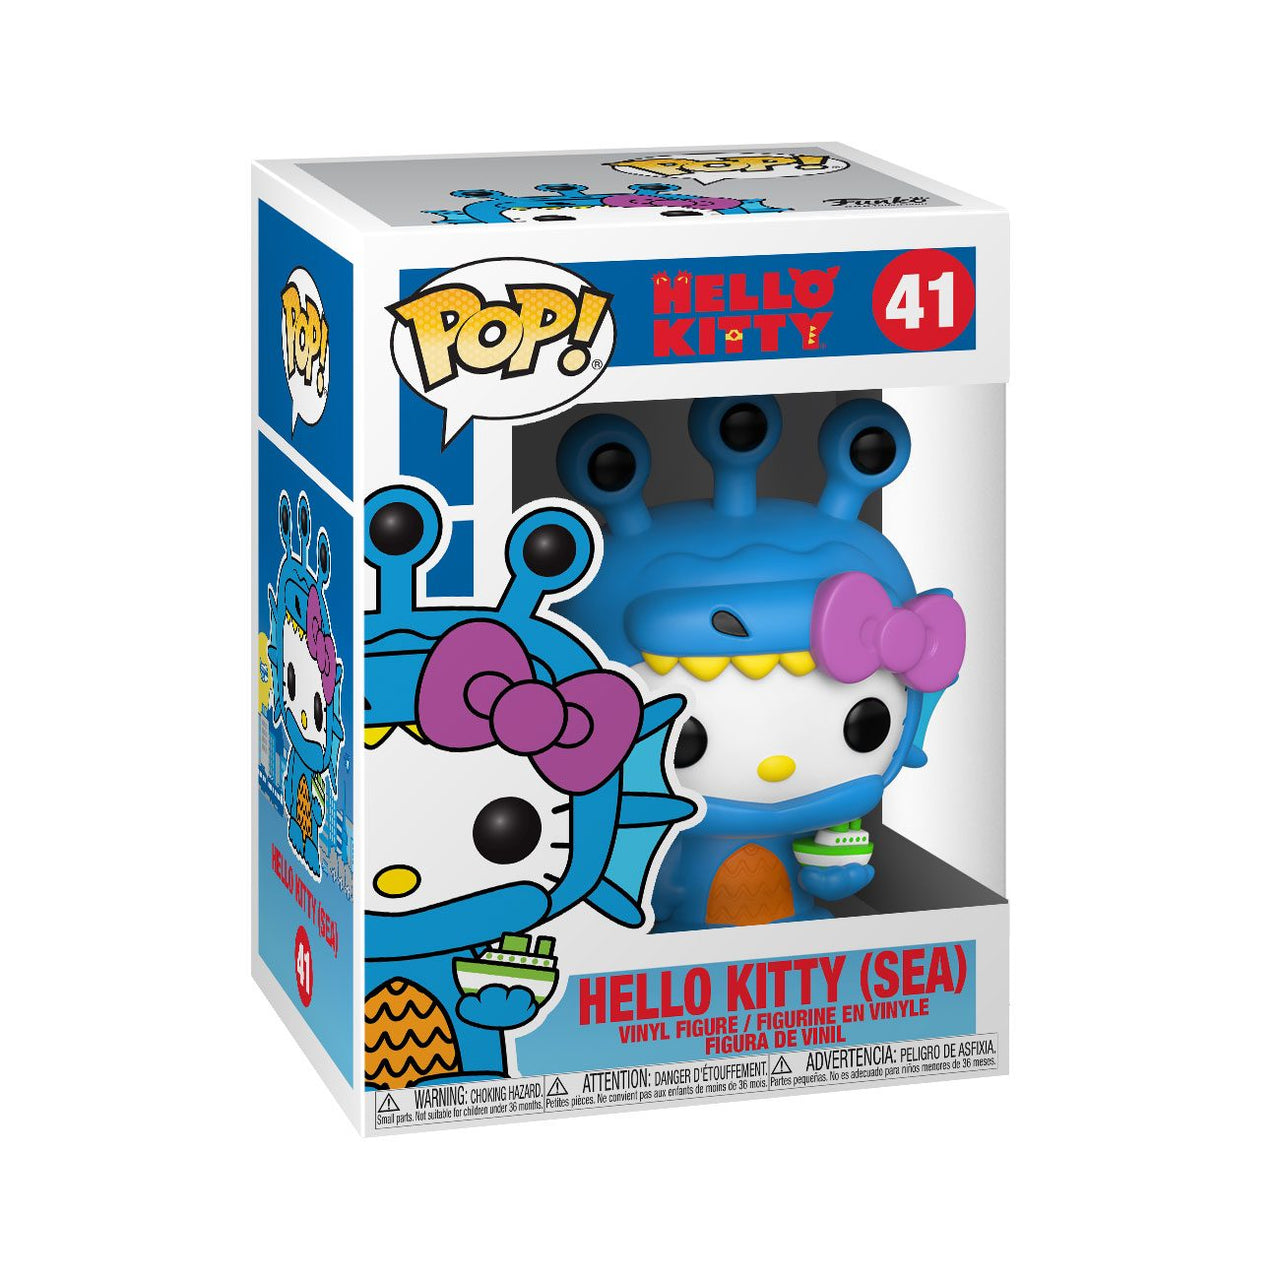 Funko Pop! Hello Kitty 41 Hello Kitty Sea Kaiju Funko